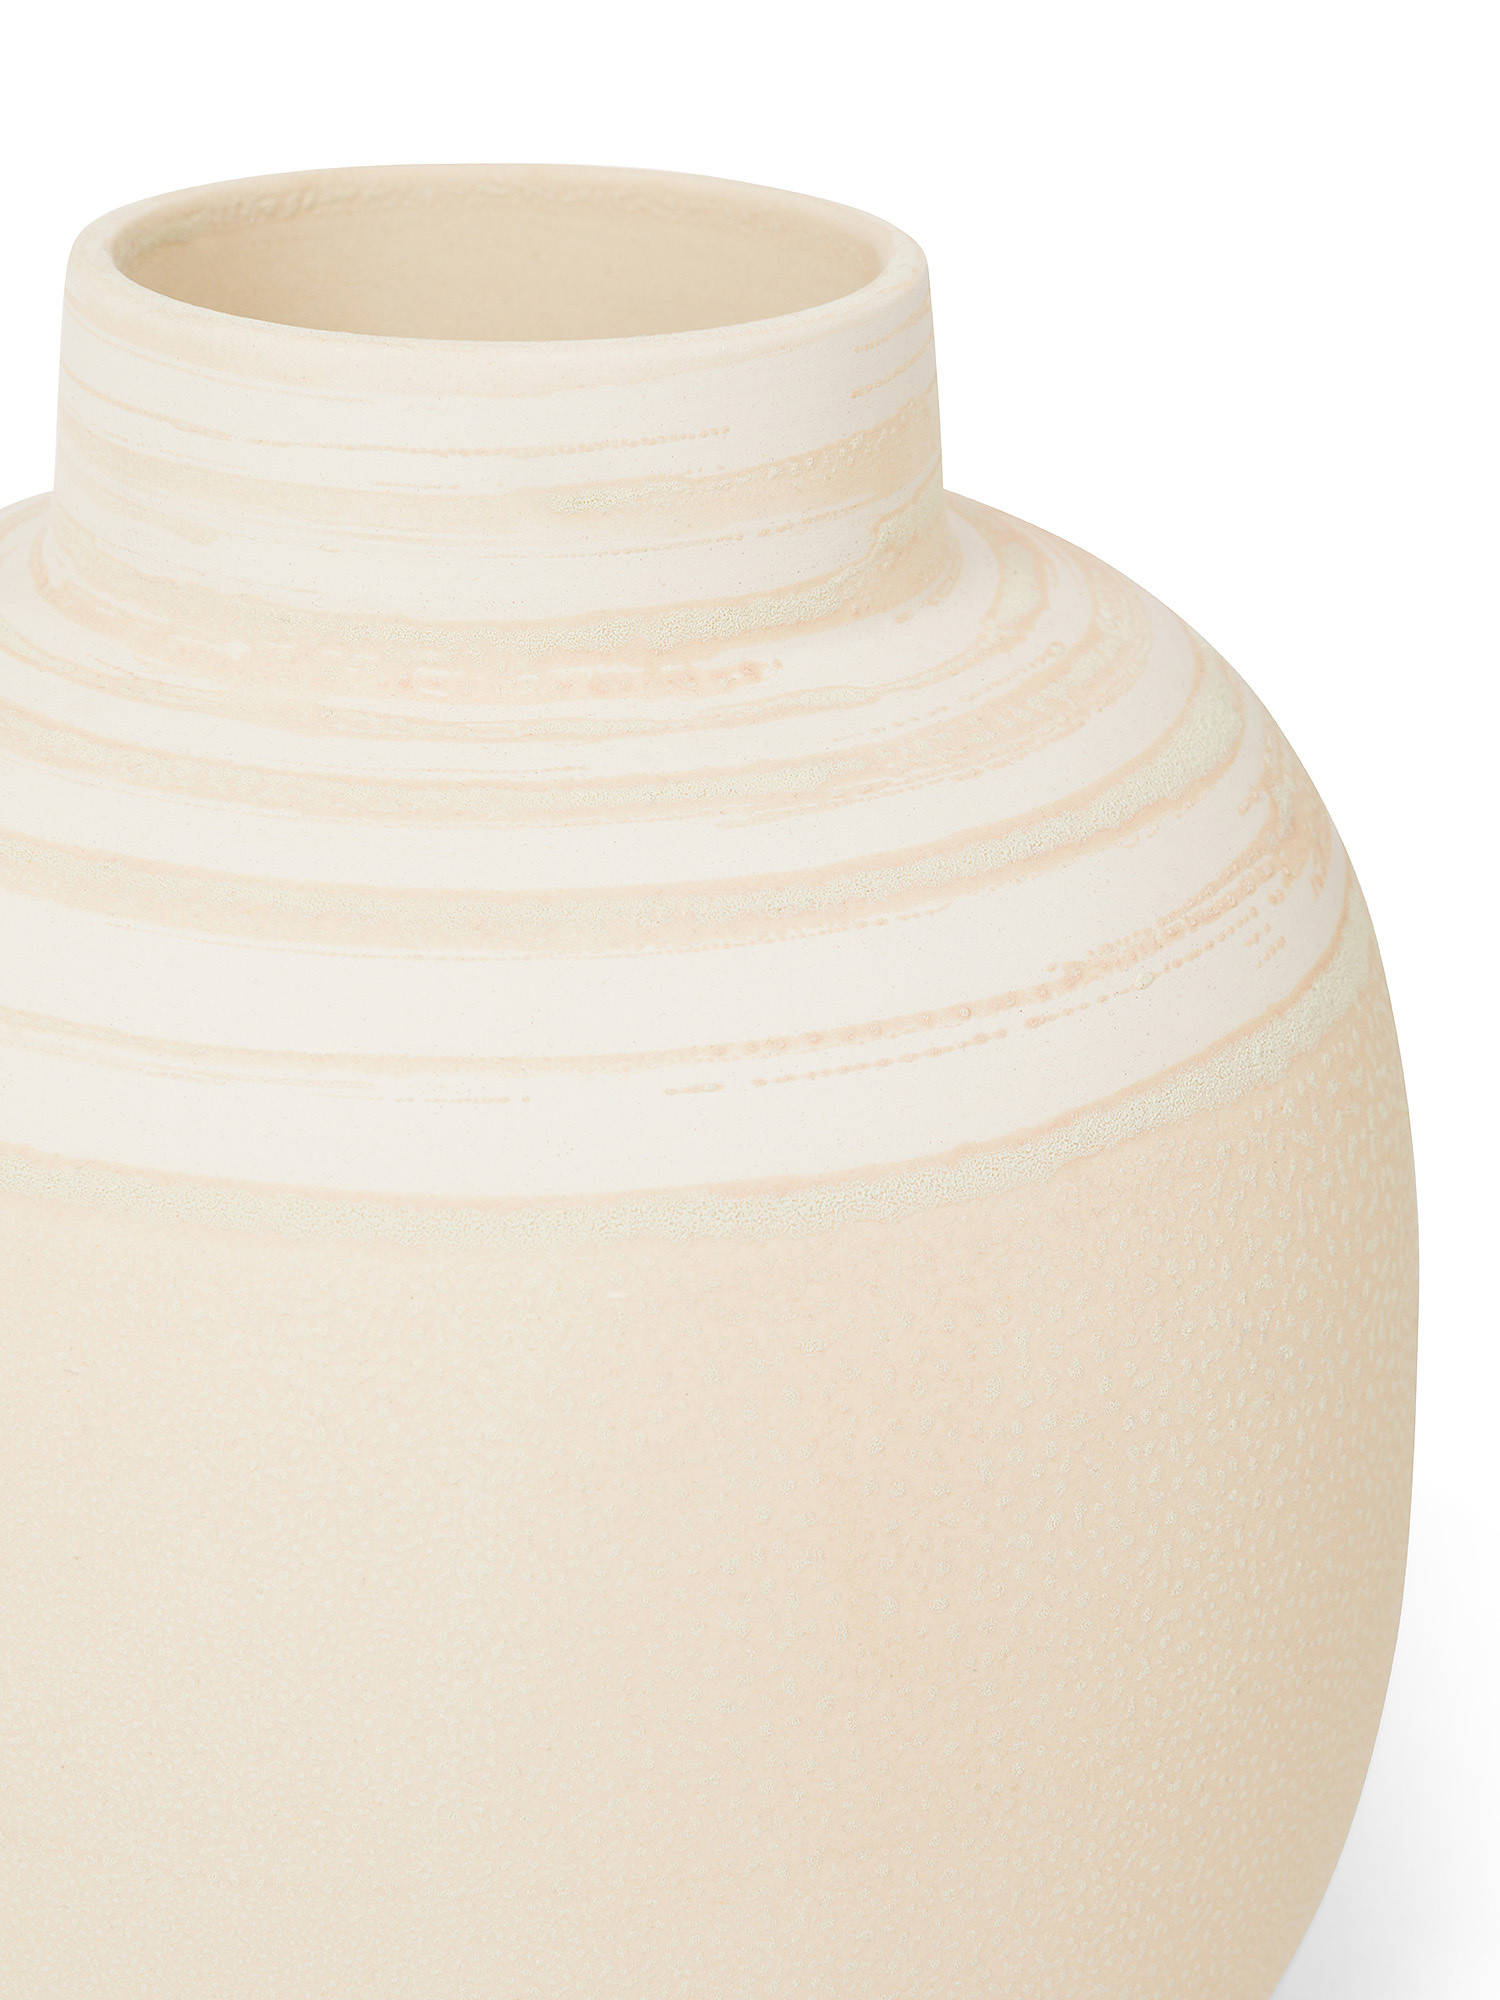 Portuguese ceramic vase, Cream, large image number 1